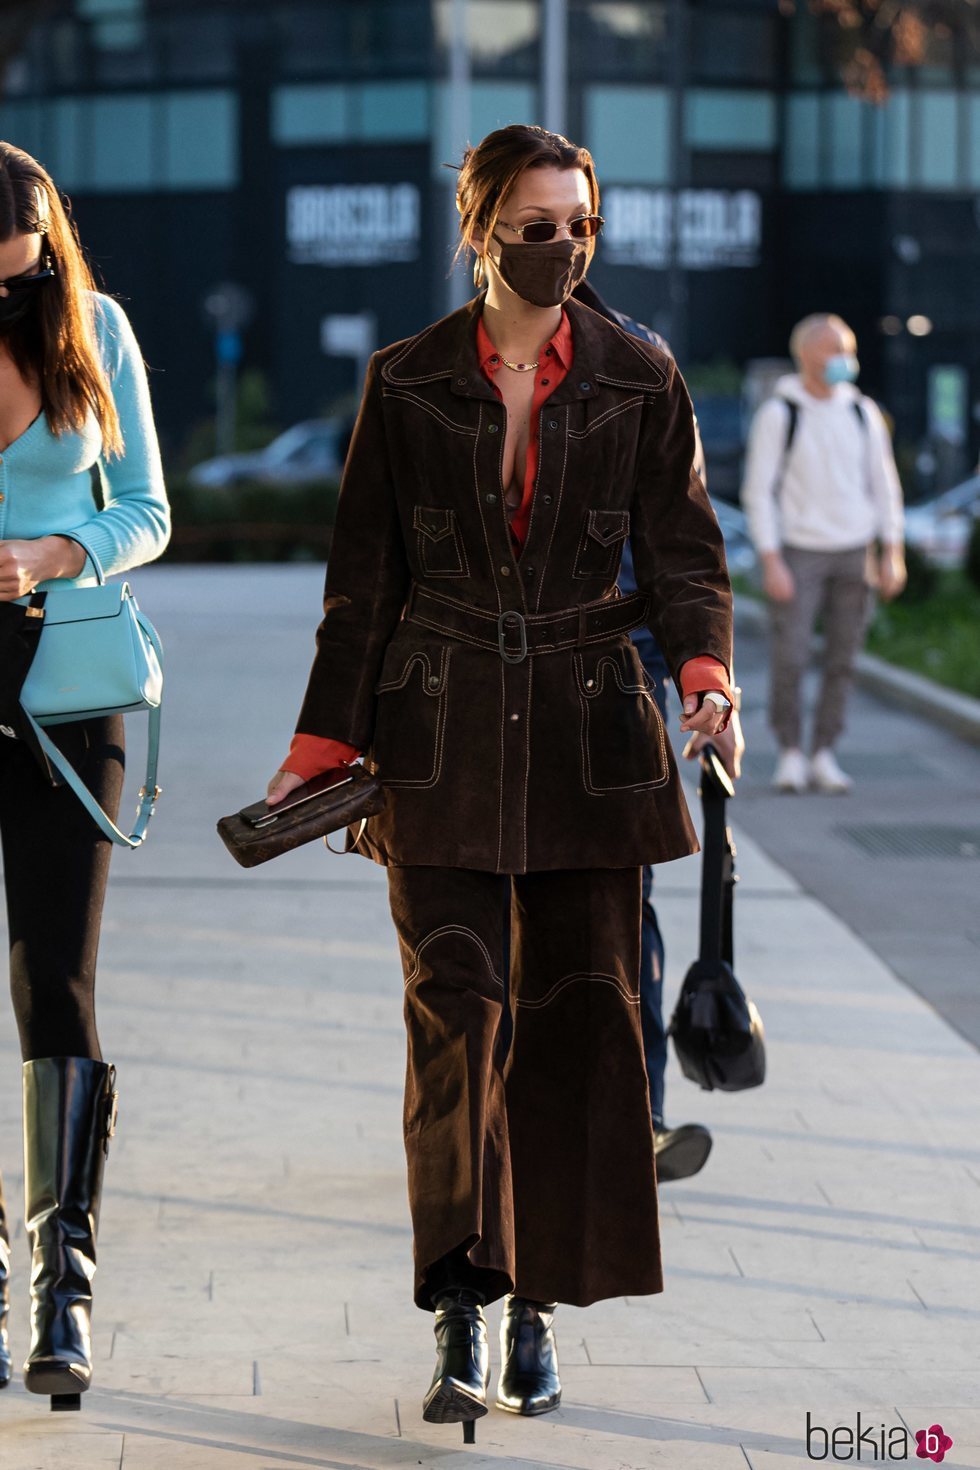 Bella hadid con un dos piezas marrón estilo western por las calles de Milán